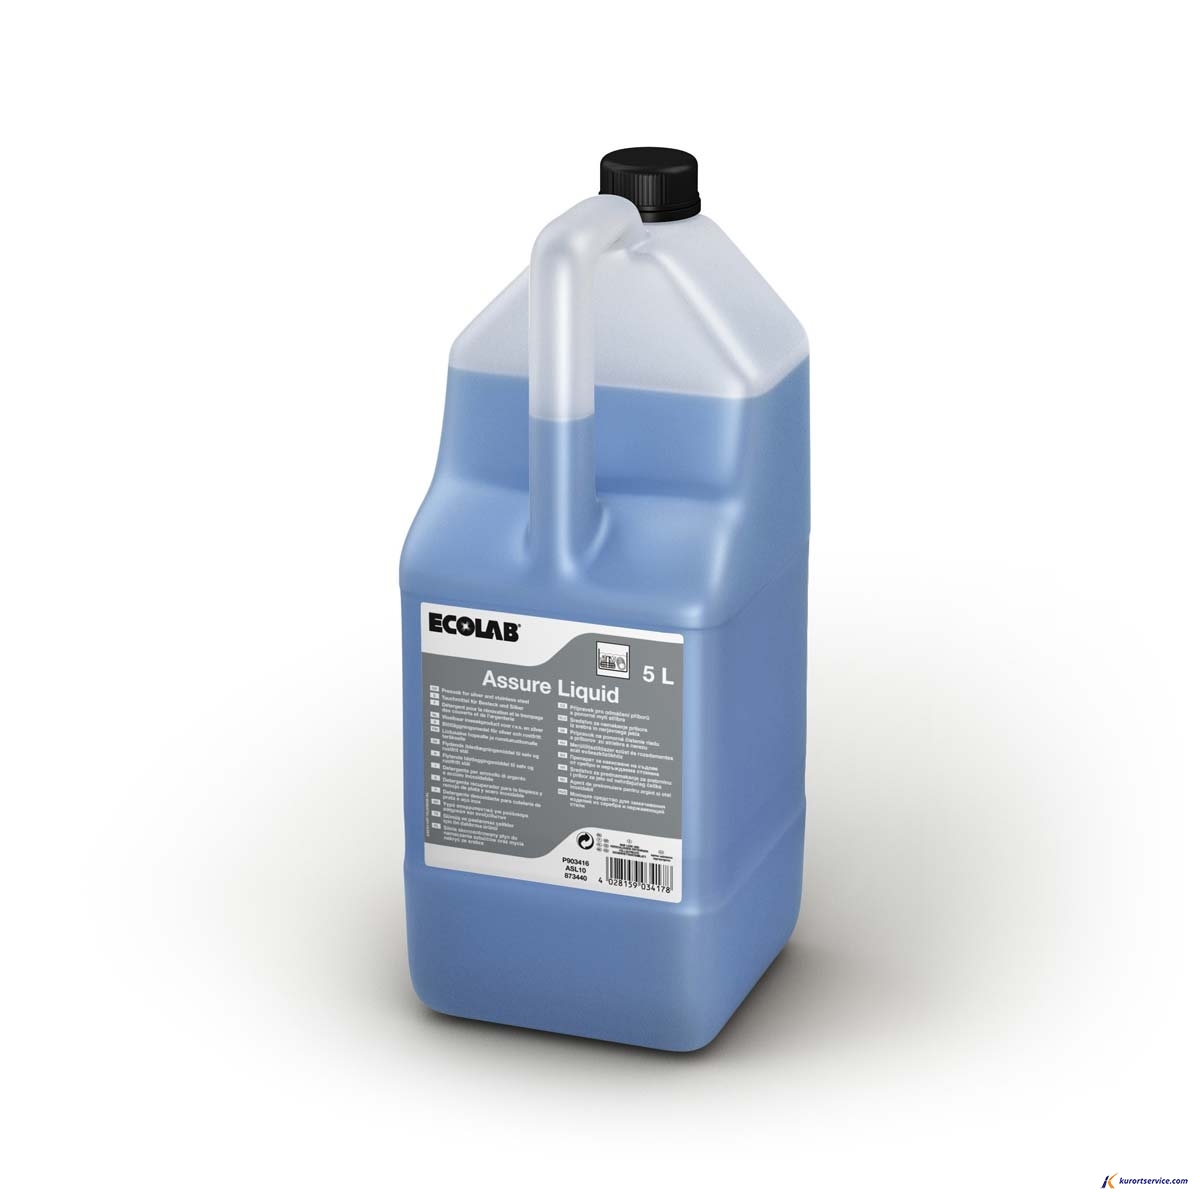 Ecolab Assure Liquid жидкое средство для замач стол приборов и серебра 5л купить в интернет-магазине Курорт Сервис